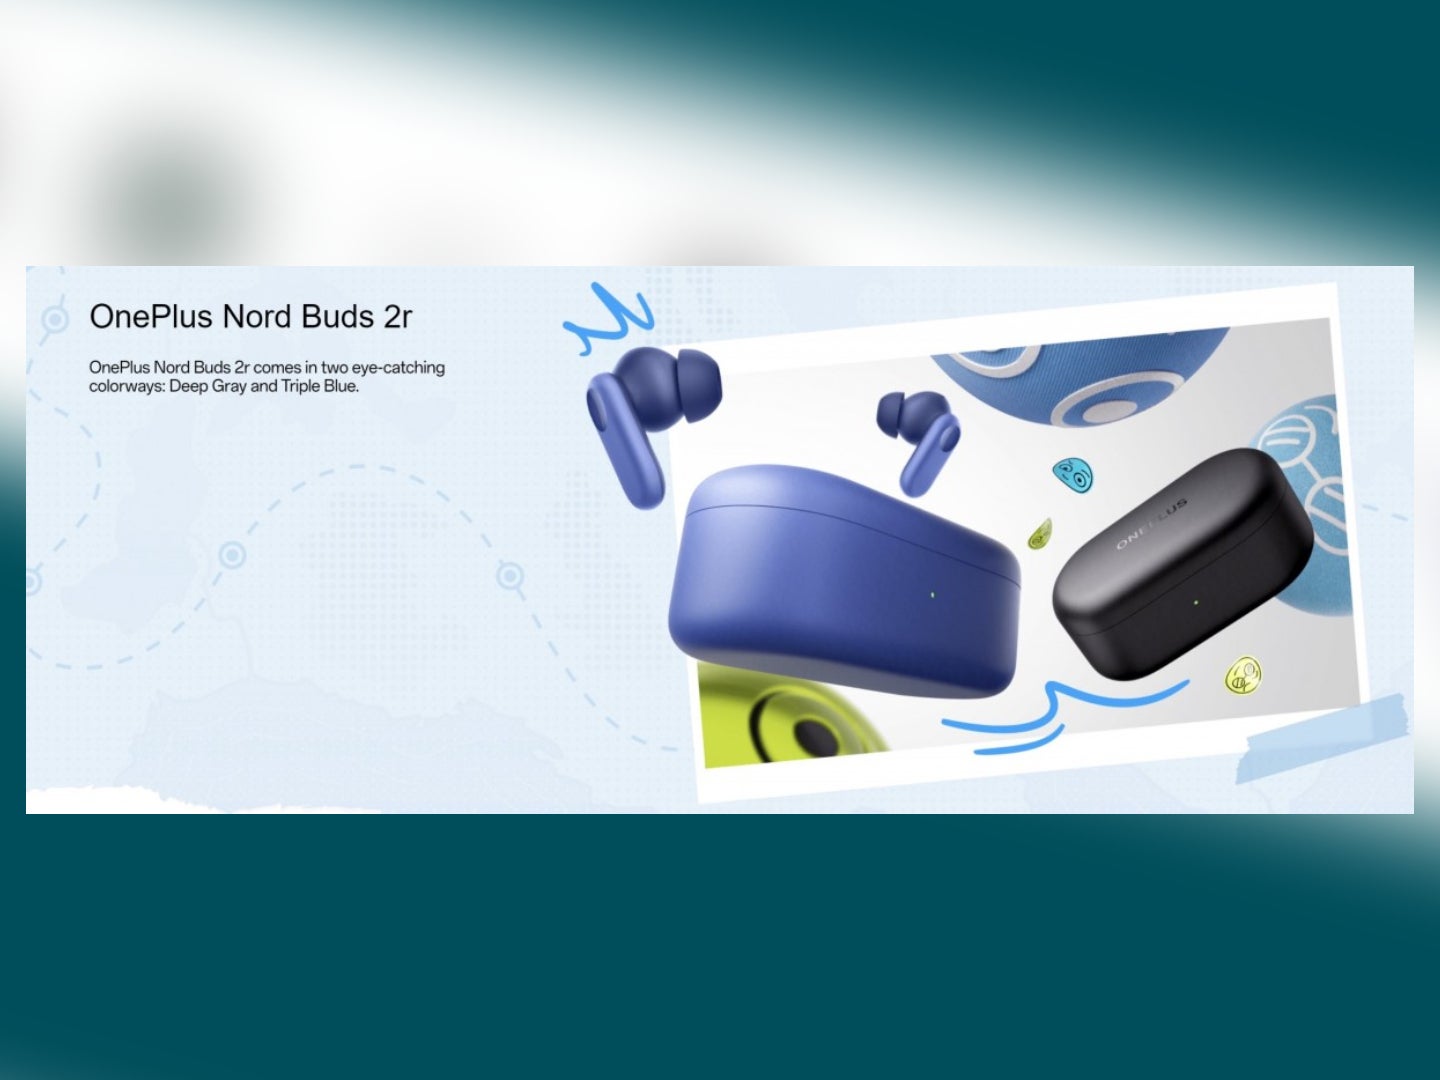 Une image promotionnelle pour les prochains Nord Buds 2r, telle que partagée par GSMArena.  - Les OnePlus Buds 2r vont probablement être une nouvelle paire d'écouteurs économiques